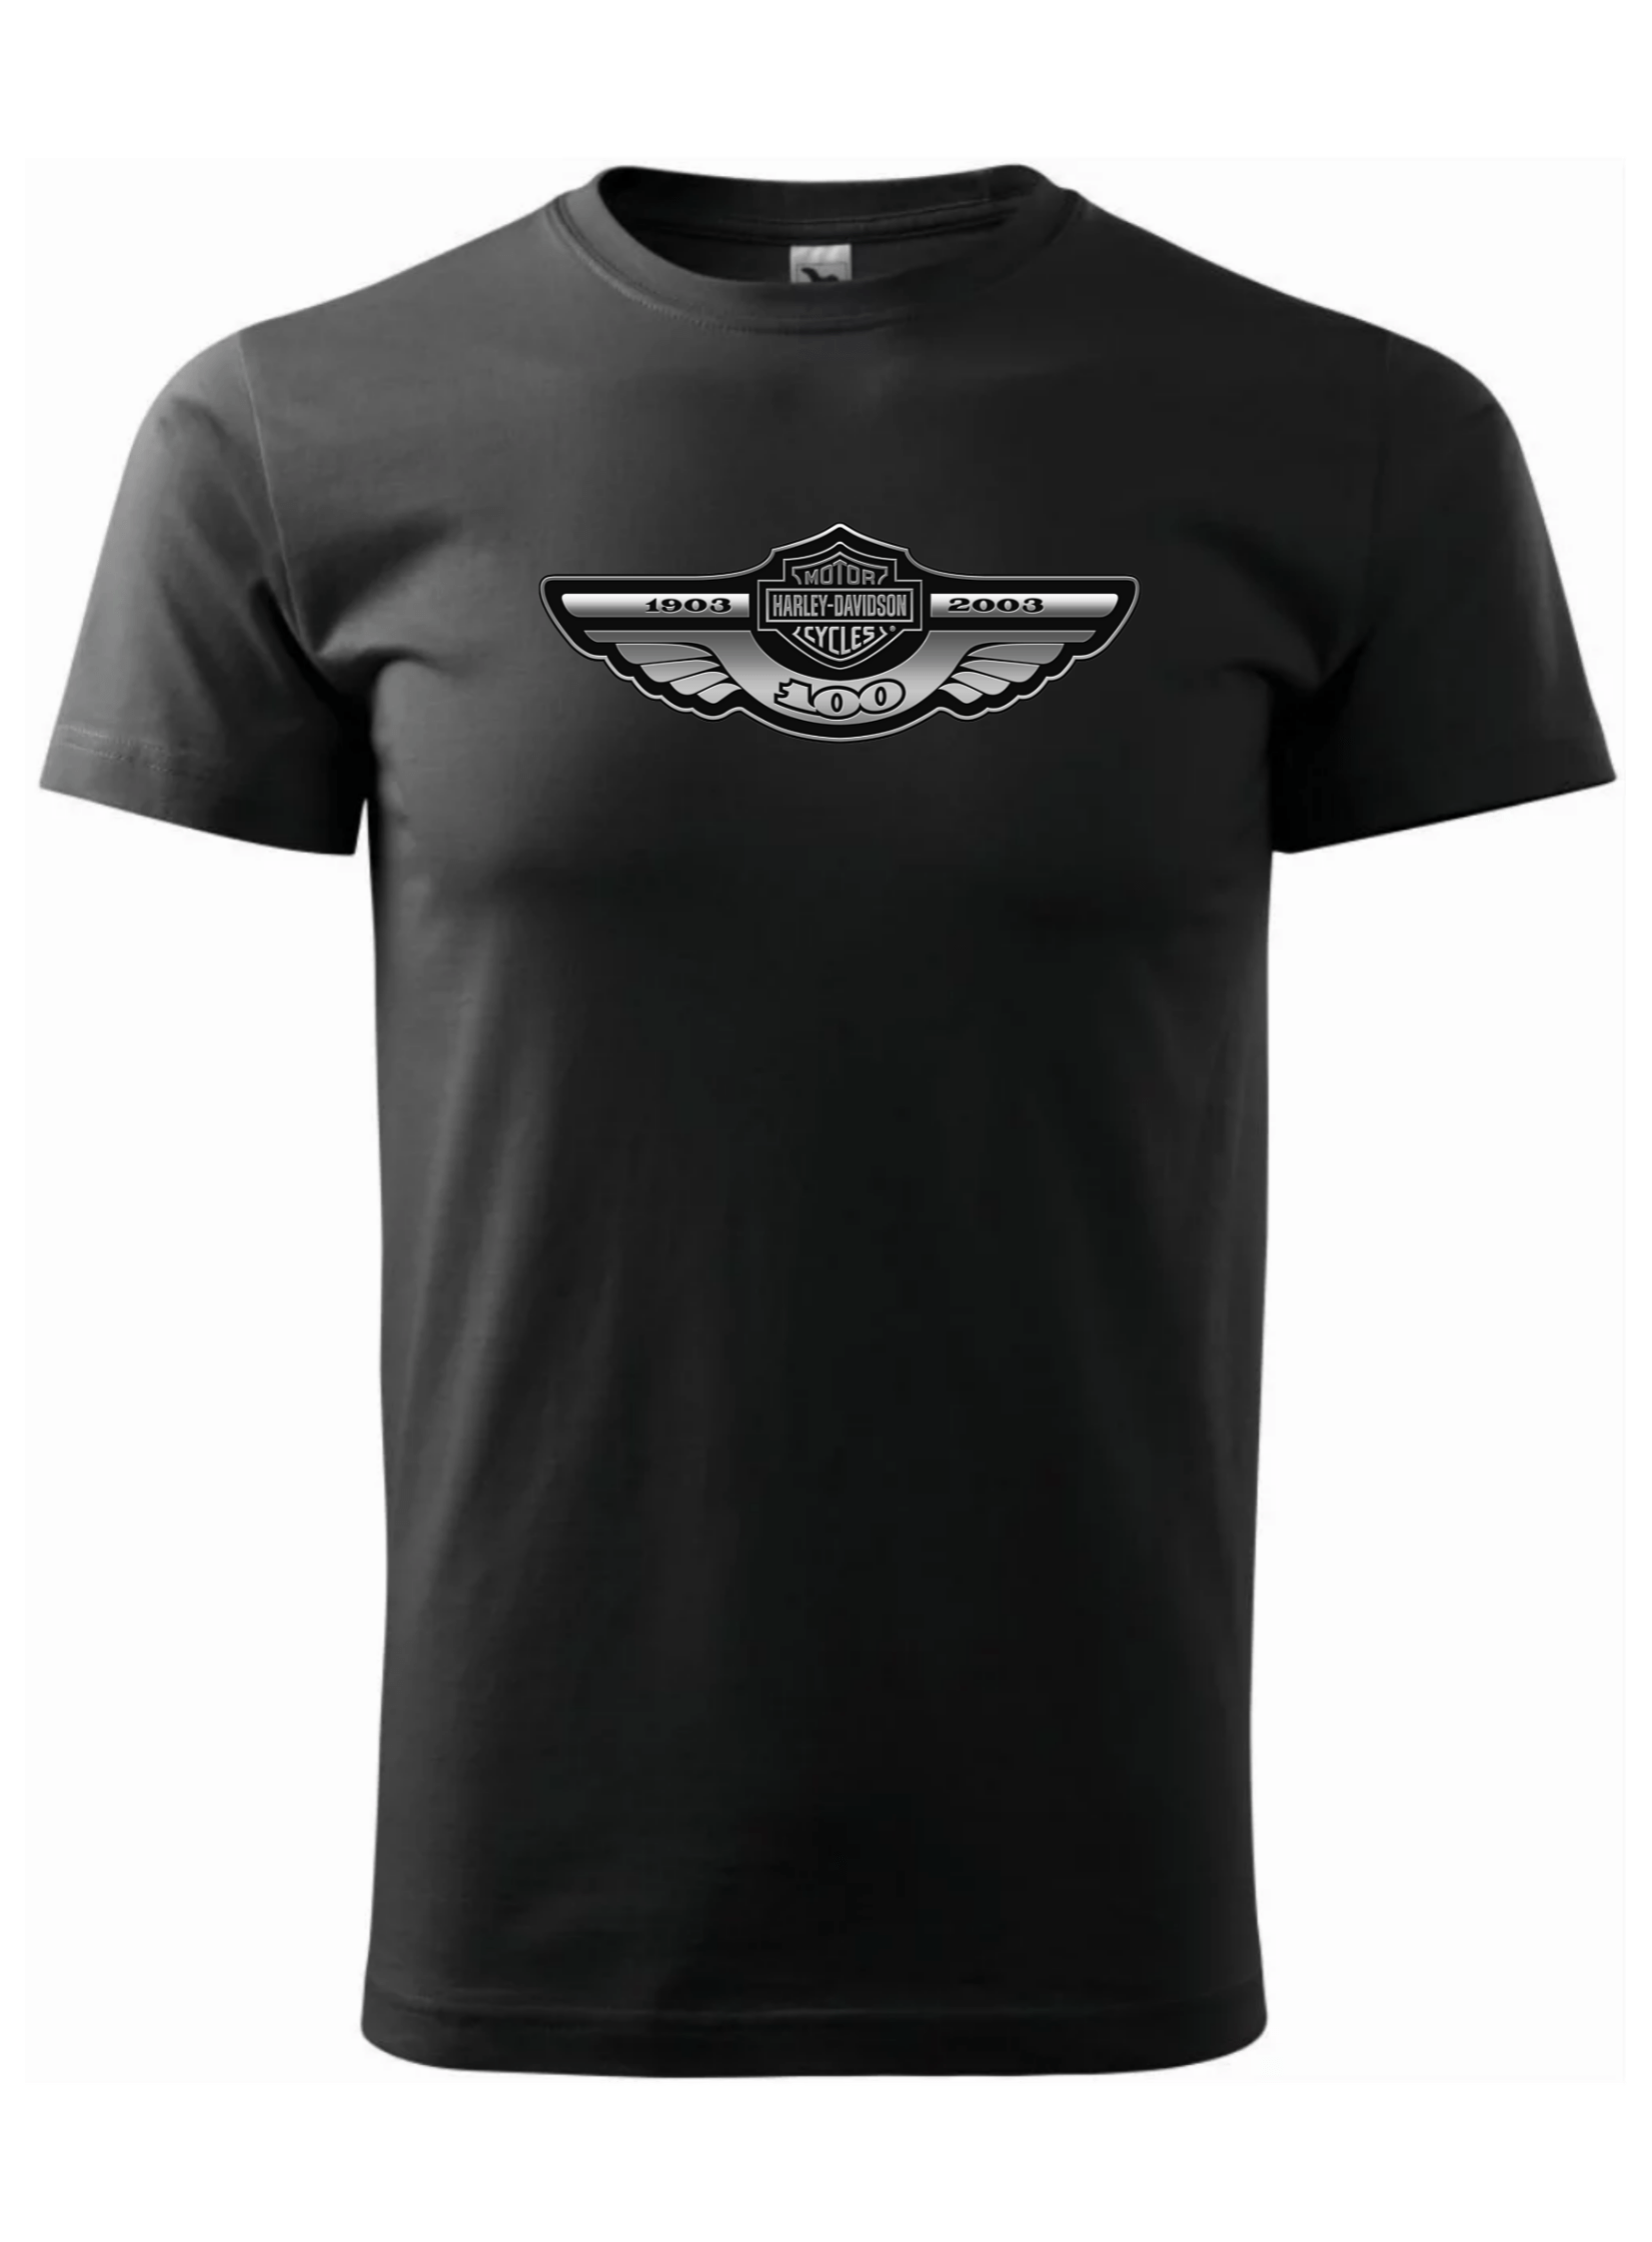 Pánské tričko s potiskem značky Harley Davidson 27